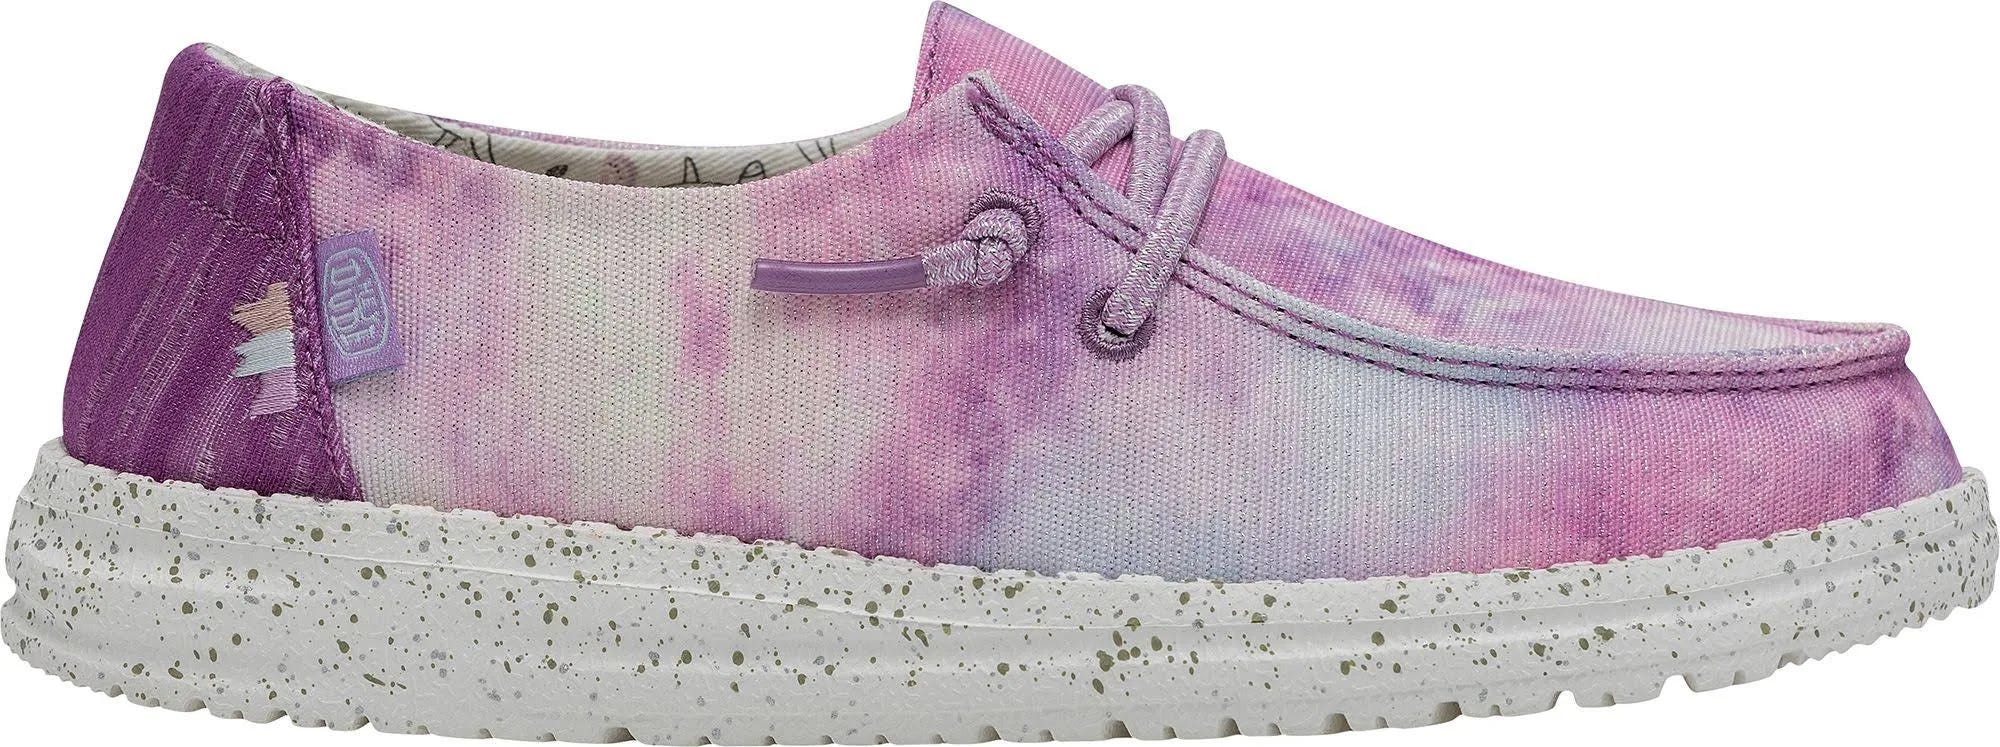 Stylish Unicorn Slip-On Shoes for Girls | Image